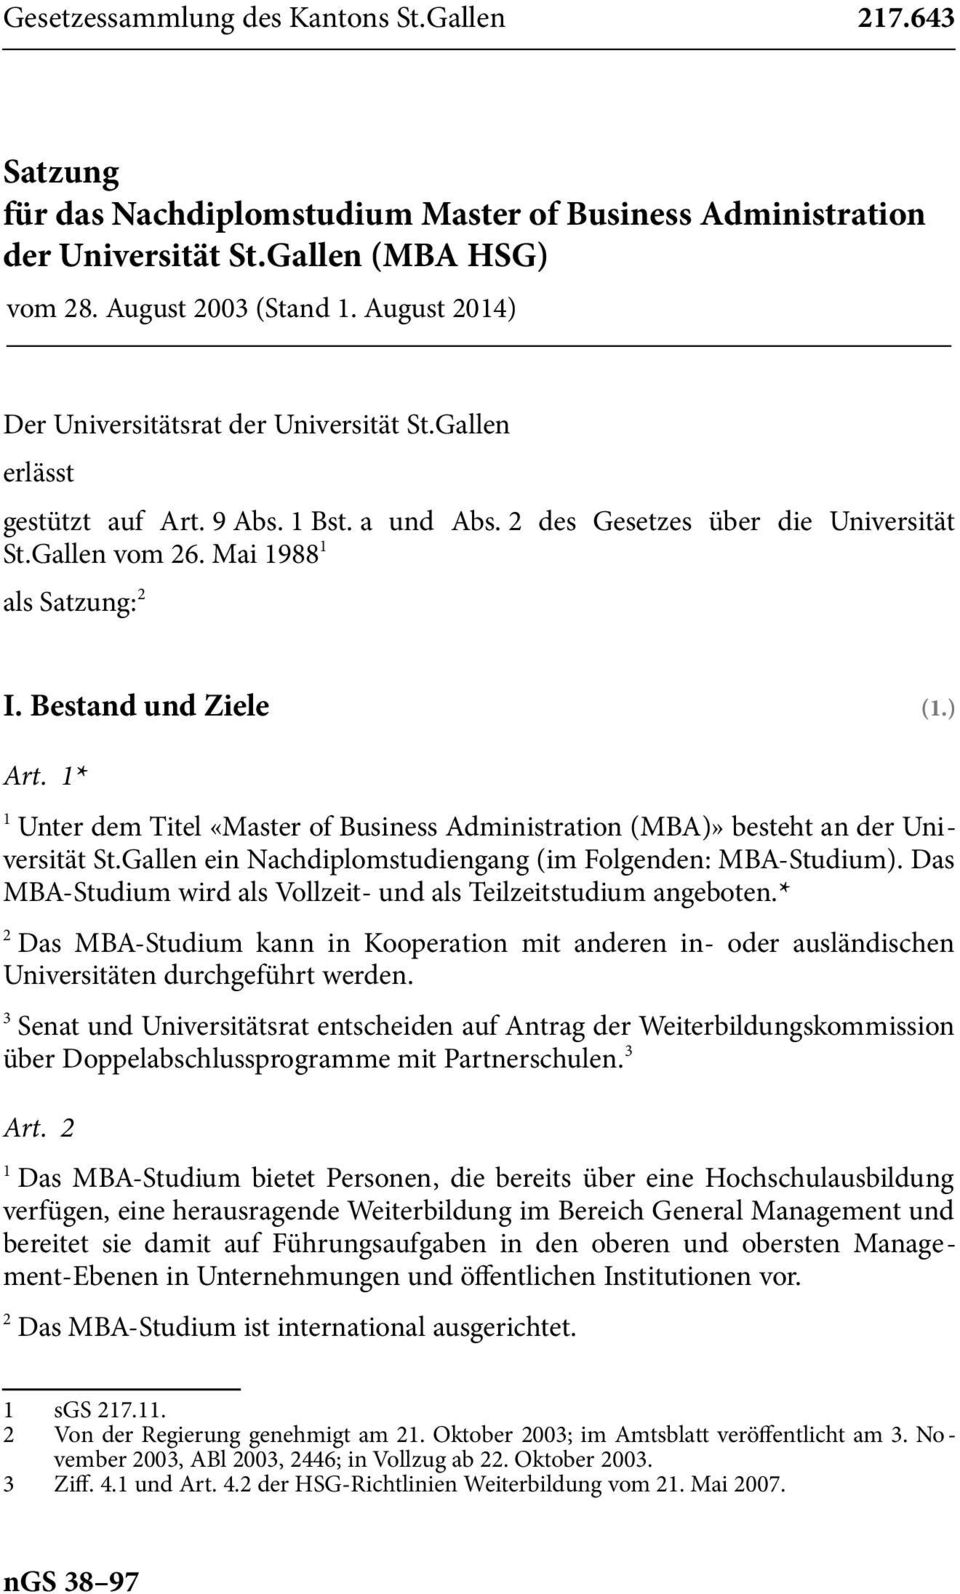 Bestand und Ziele (.) Art. * Unter dem Titel «Master of Business Administration (MBA)» besteht an der Universität St.Gallen ein Nachdiplomstudiengang (im Folgenden: MBA-Studium).